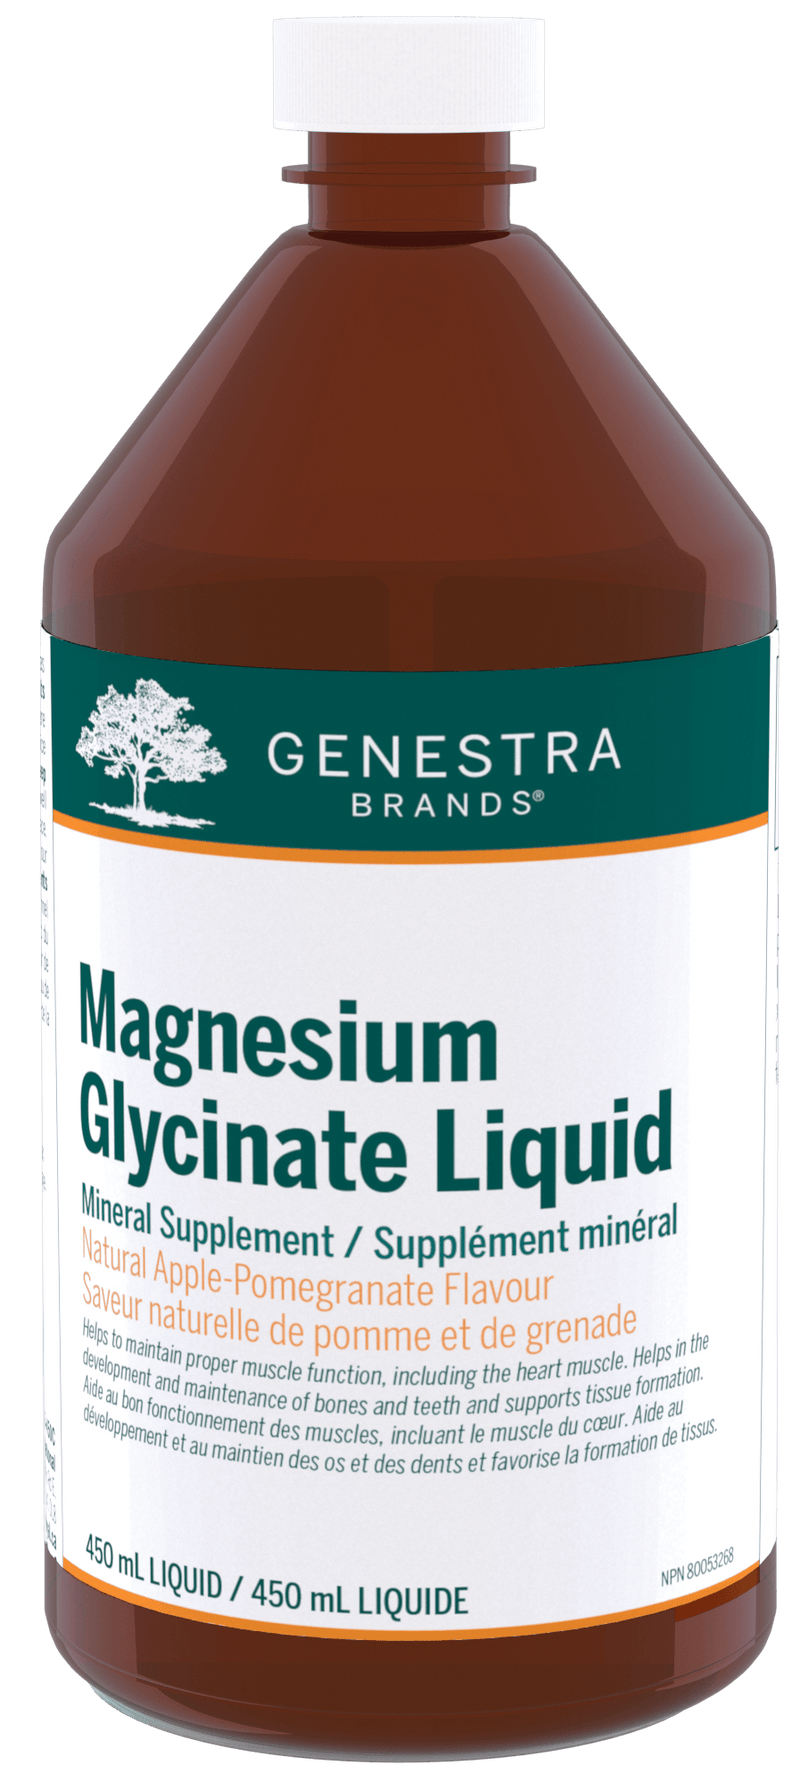 Genestra Magnesium Glycinate Liquid 450mL - Five Natural